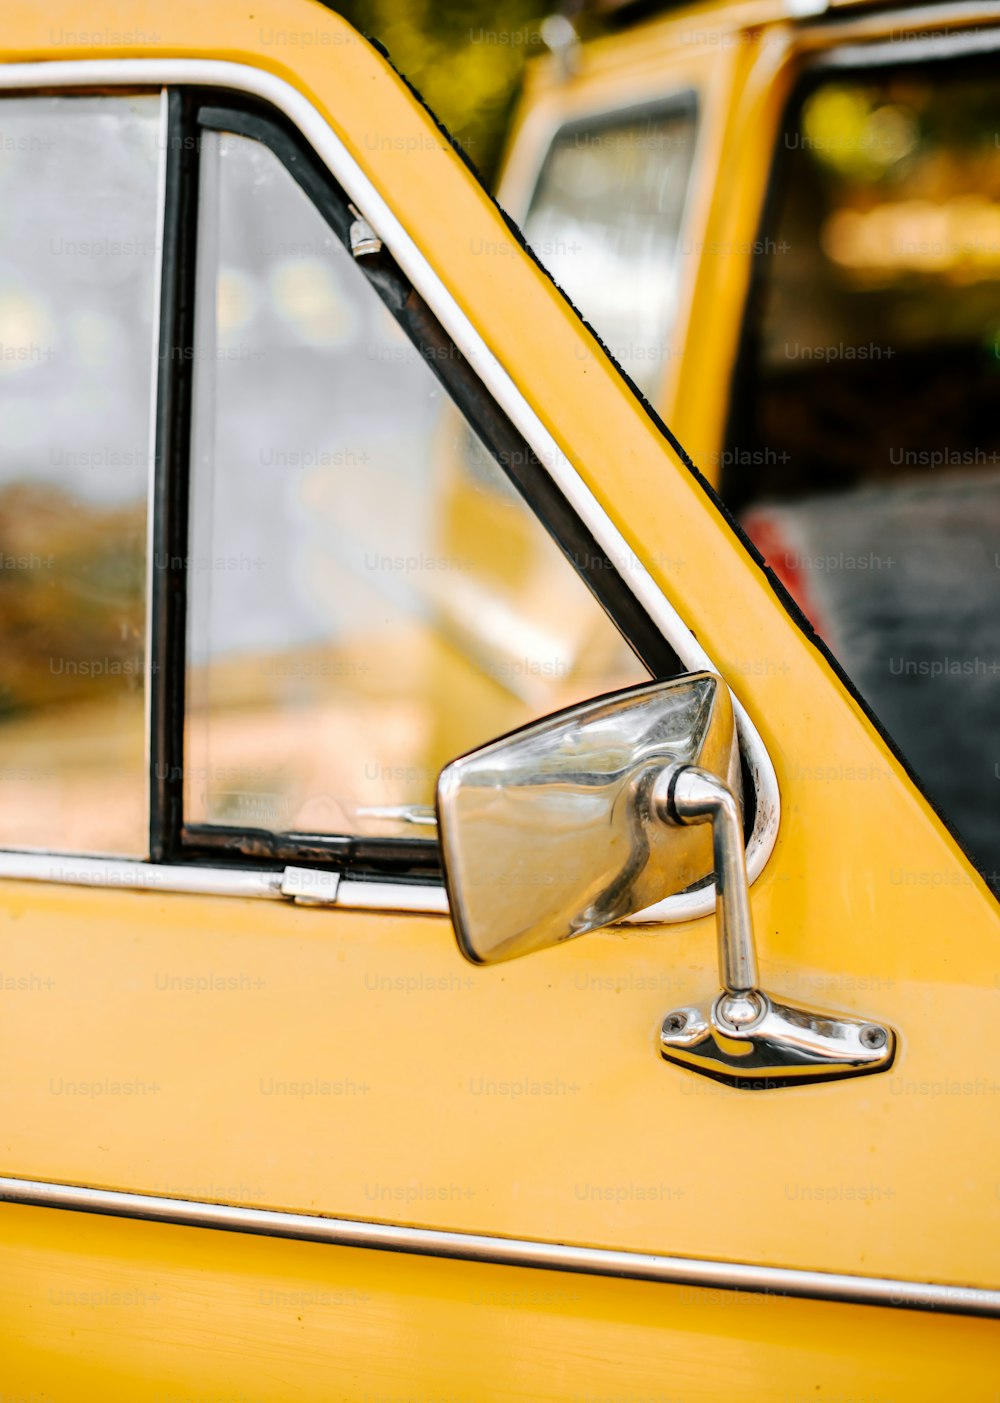 Un primer plano del espejo retrovisor lateral de un coche amarillo